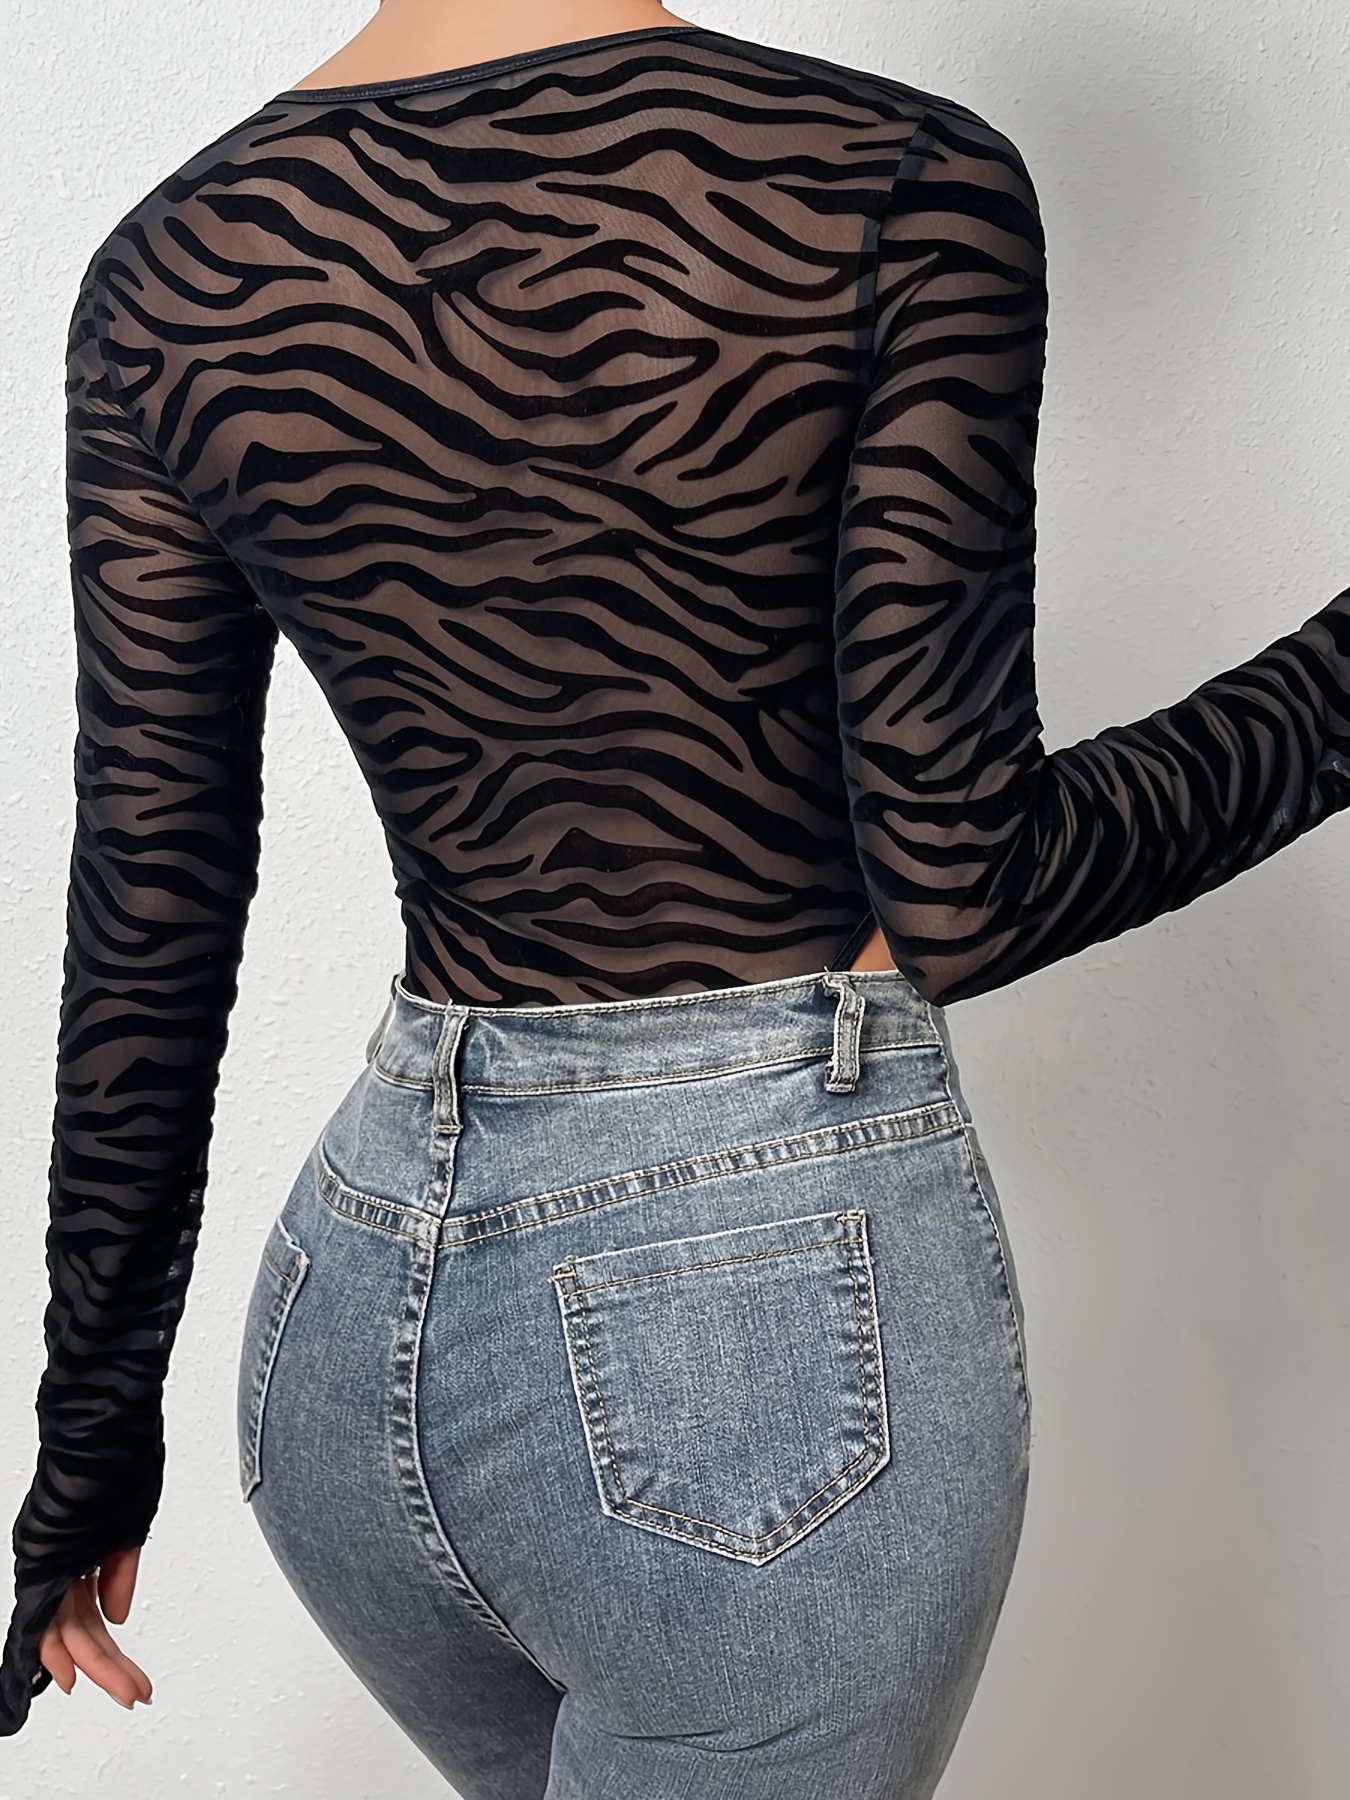 Mesh Zebra Print High Cut Bodysuit Sexy Long Sleeve Sheer - Temu